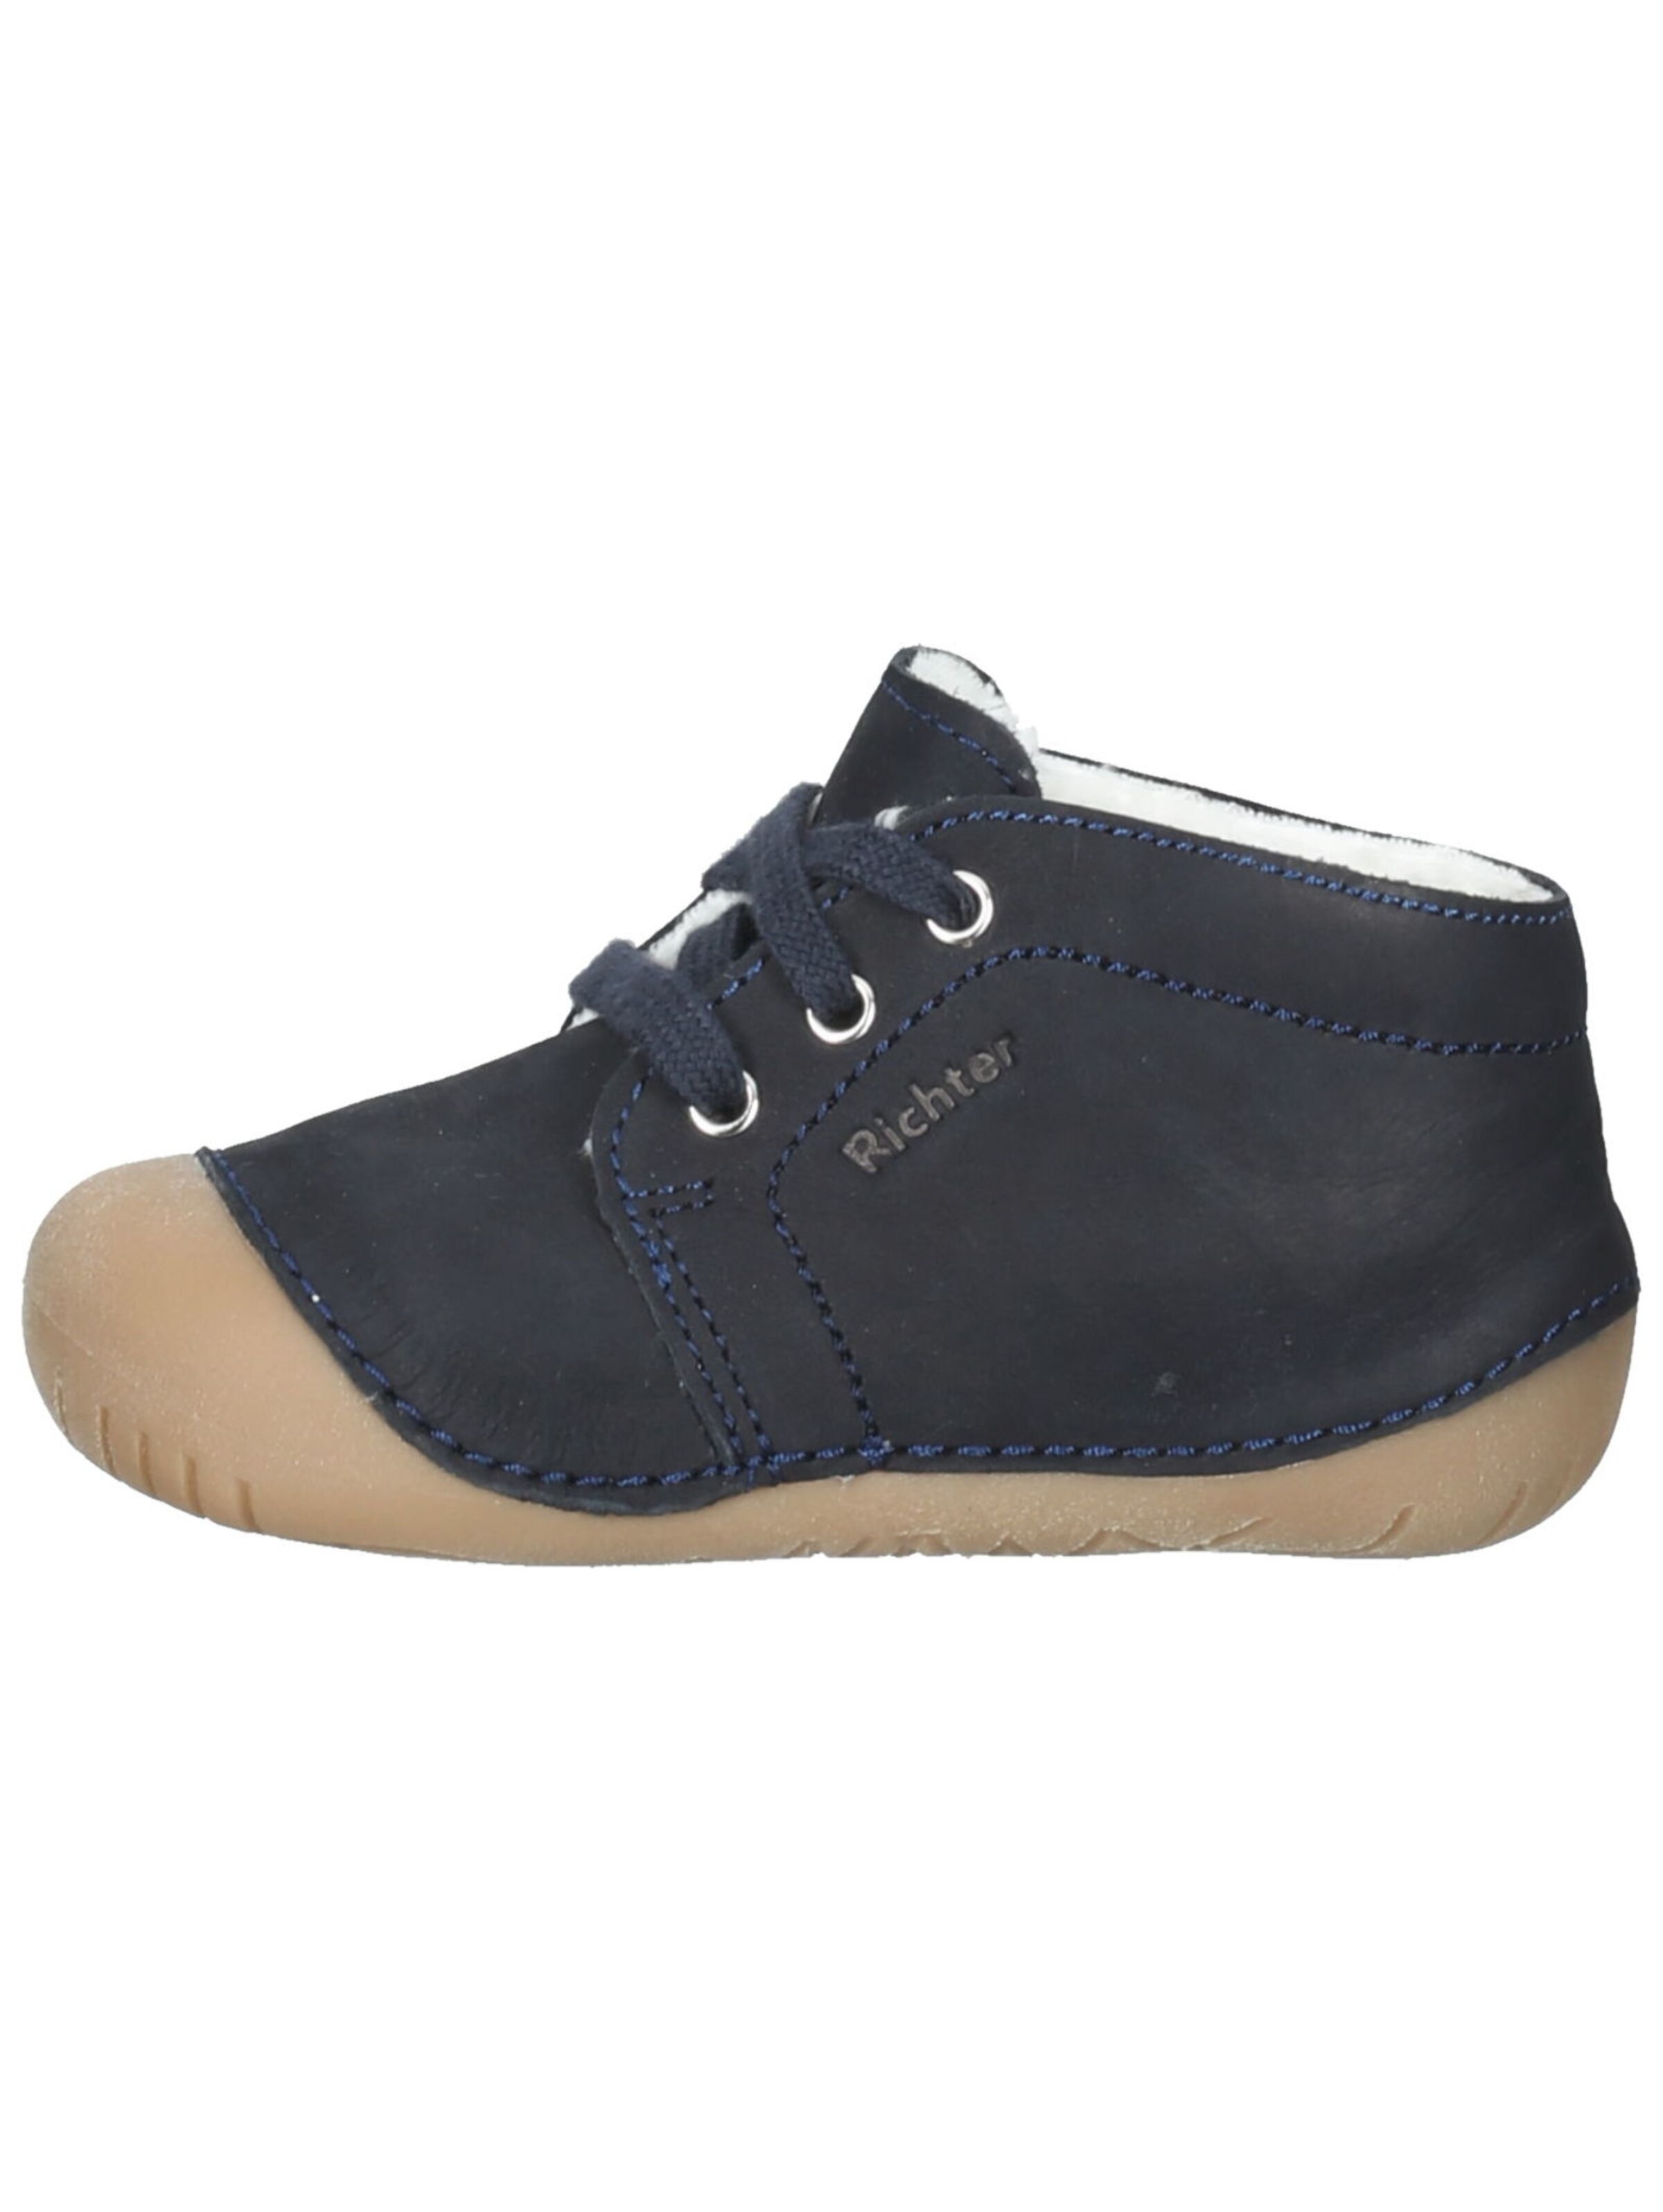 Kinder Schuhe RICHTER Lauflernschuh in Nachtblau - WW61112